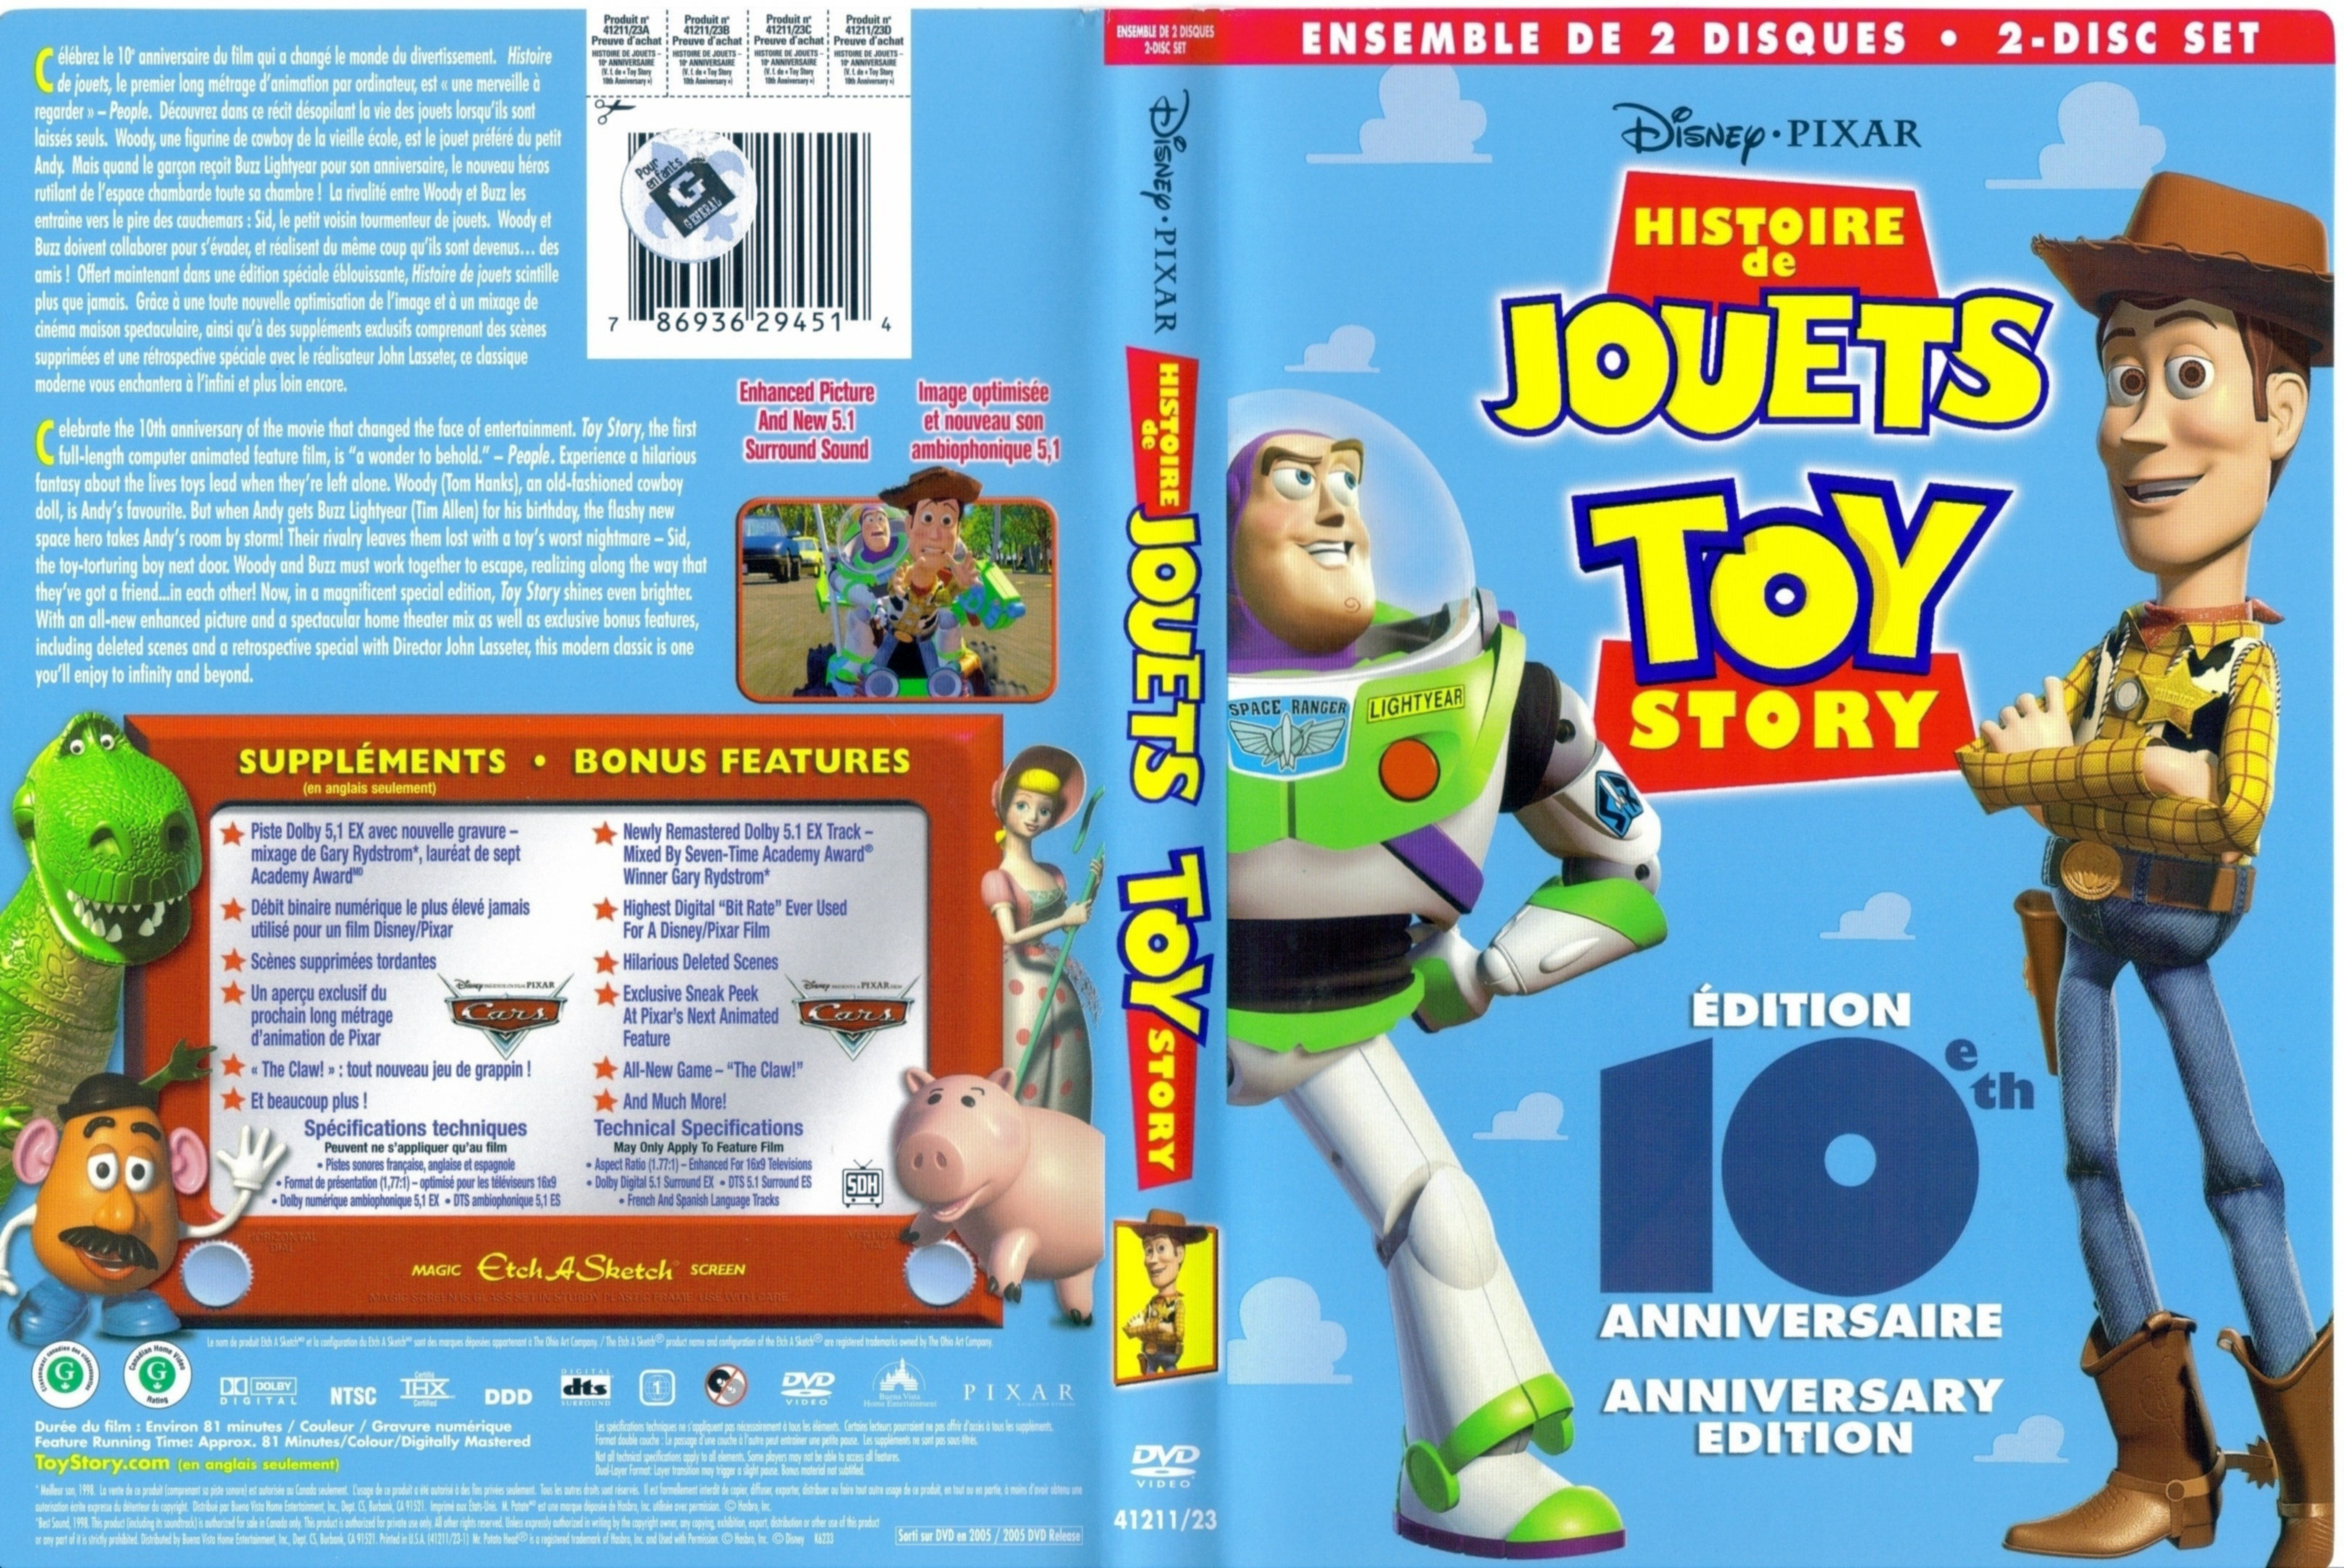 Jaquette DVD Histoire de jouet - Toy story (Canadienne)